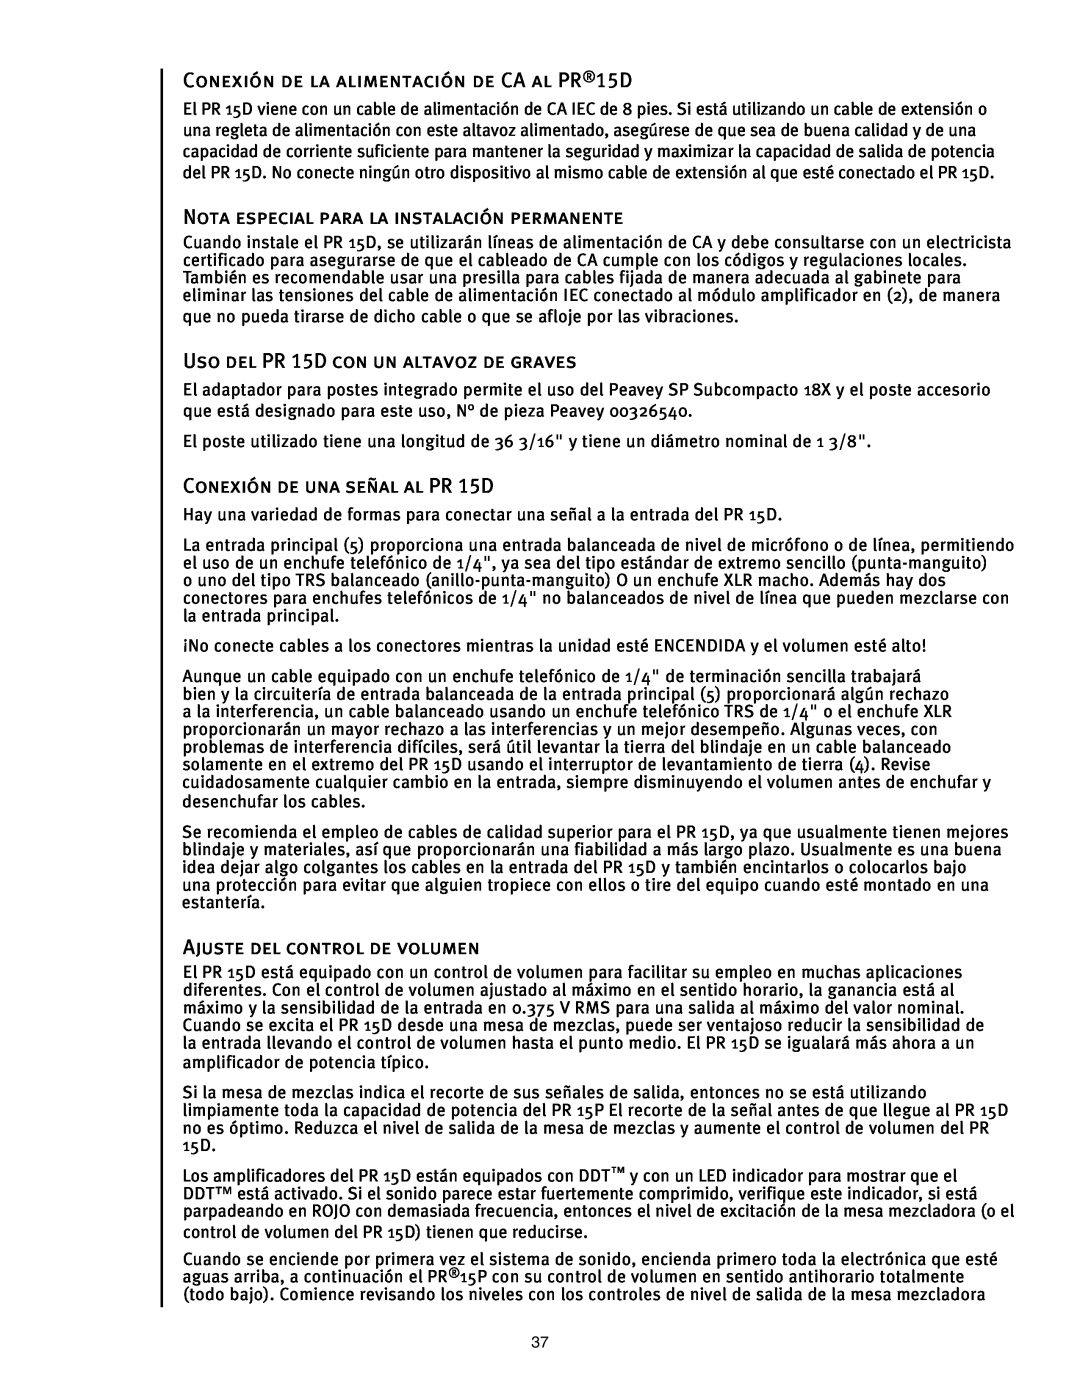 Peavey PR 15 D manual CONEXIÓN DE LA ALIMENTACIÓN DE CA AL PR15D, Nota Especial Para La Instalación Permanente 